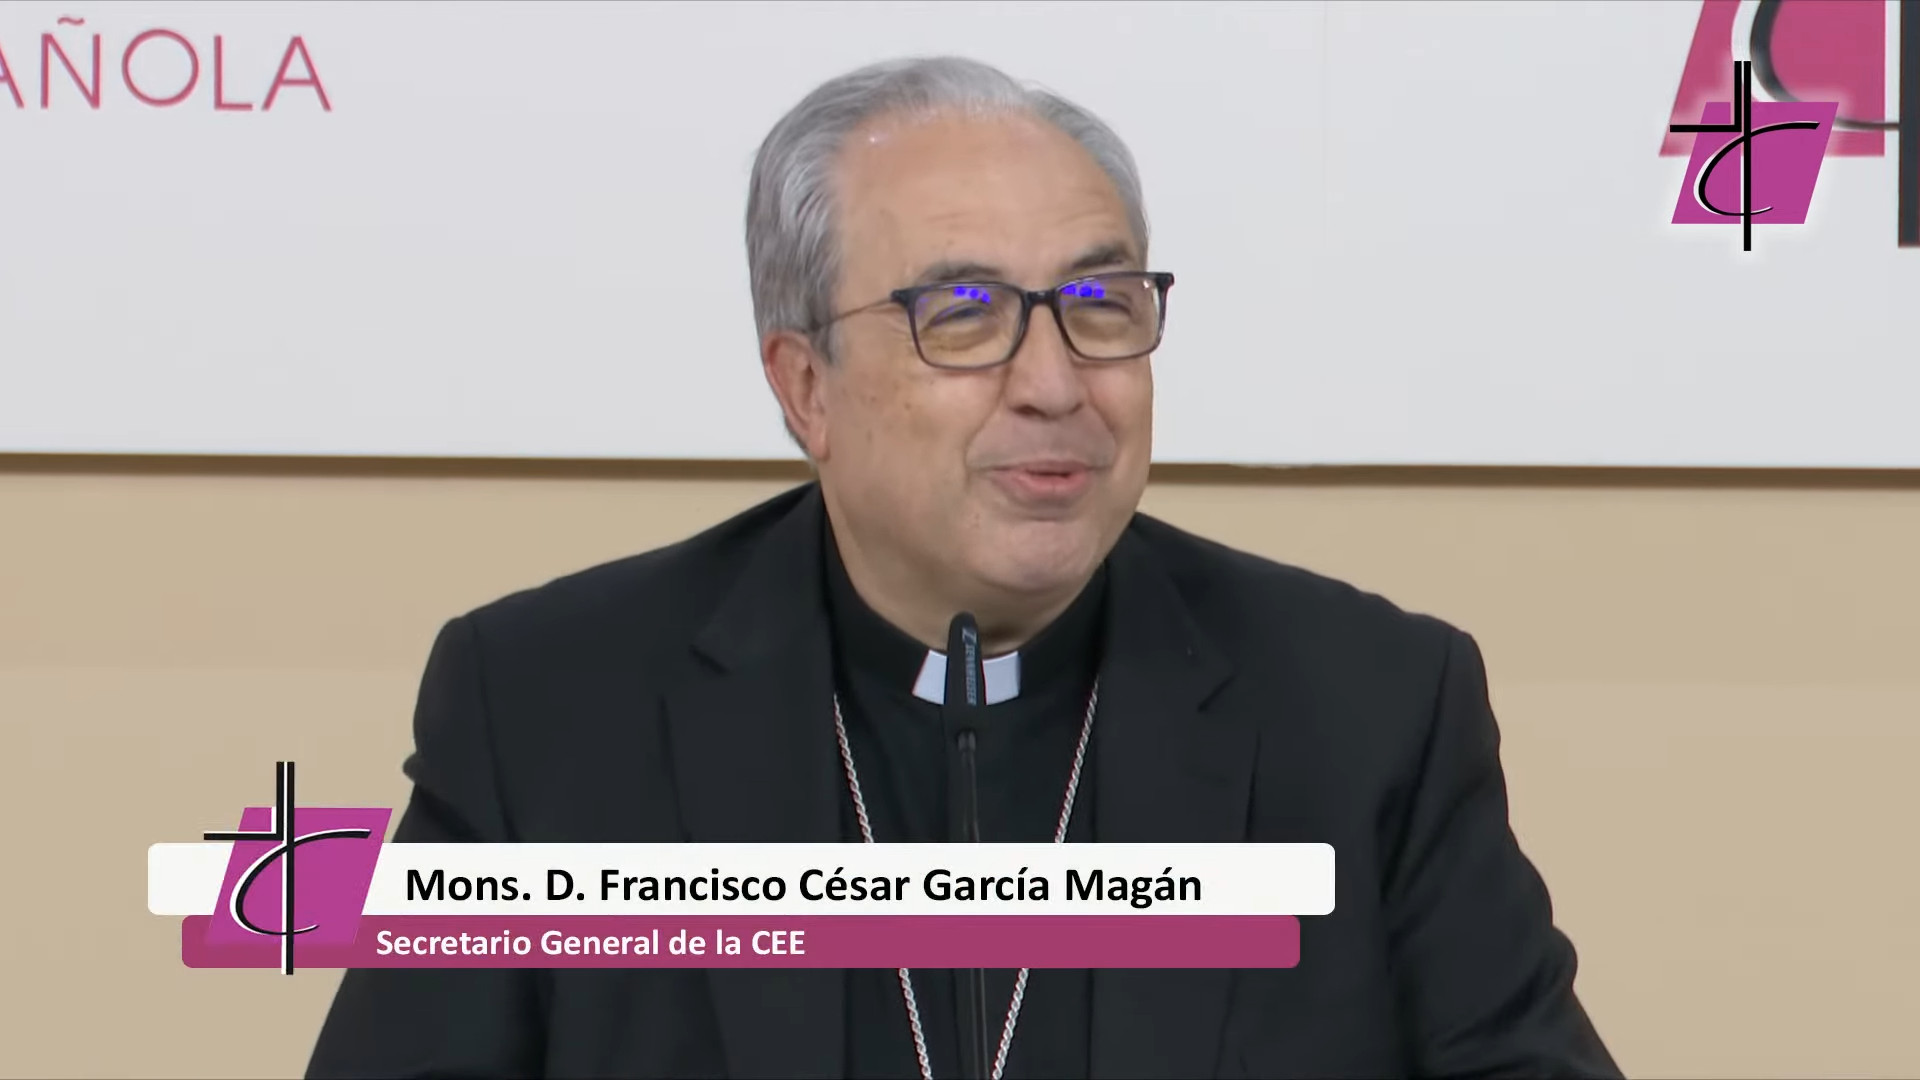 Mons. Francisco Csar Garca Magn es elegido secretario general de la Conferencia Episcopal Espaola